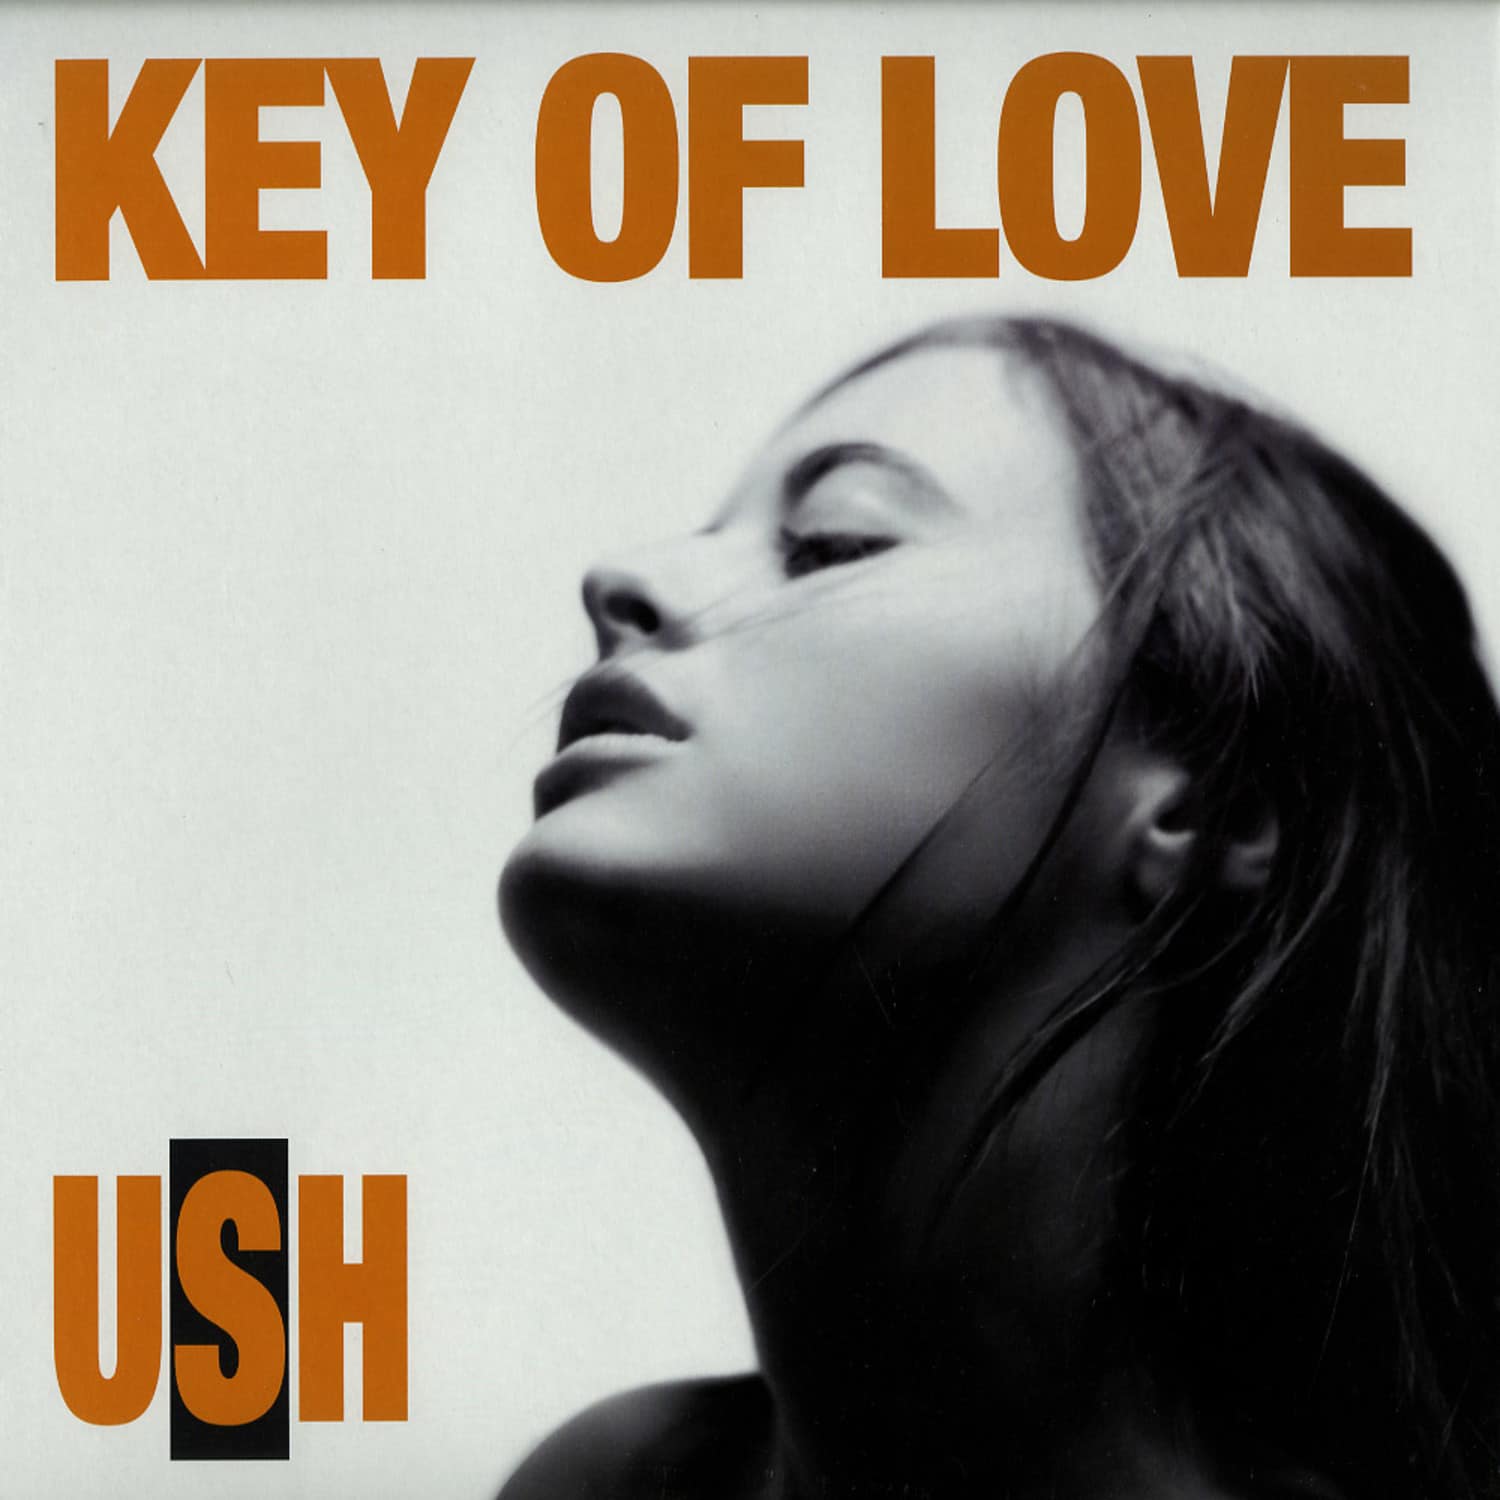 USH - KEY OF LOVE - HOLD YOUTH RMX